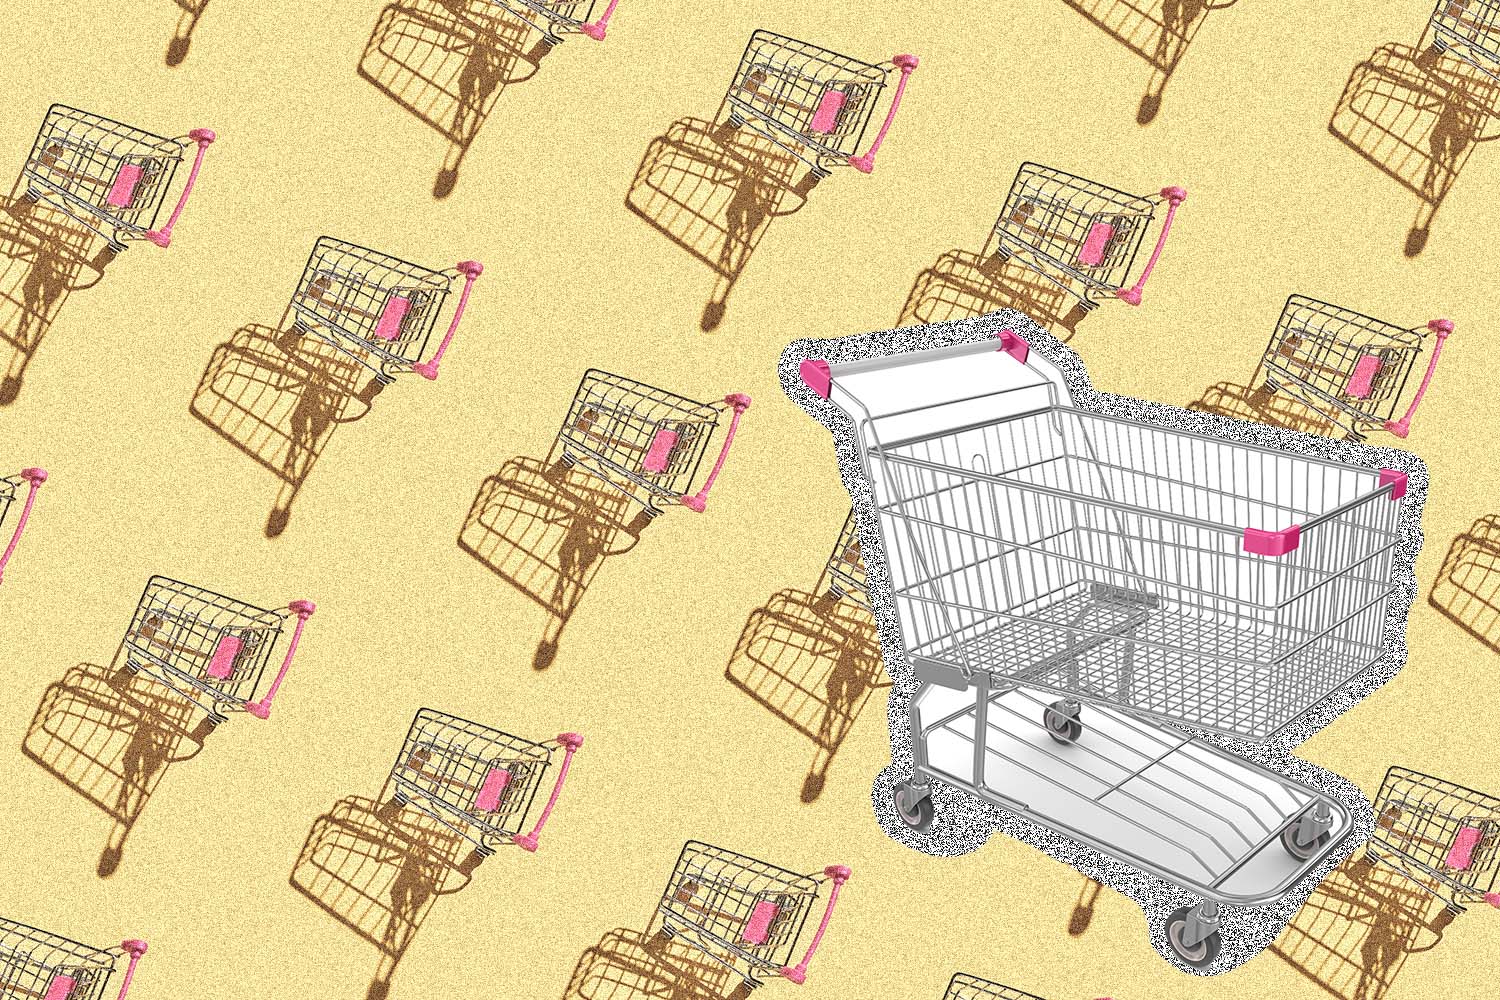 push-style shopping carts